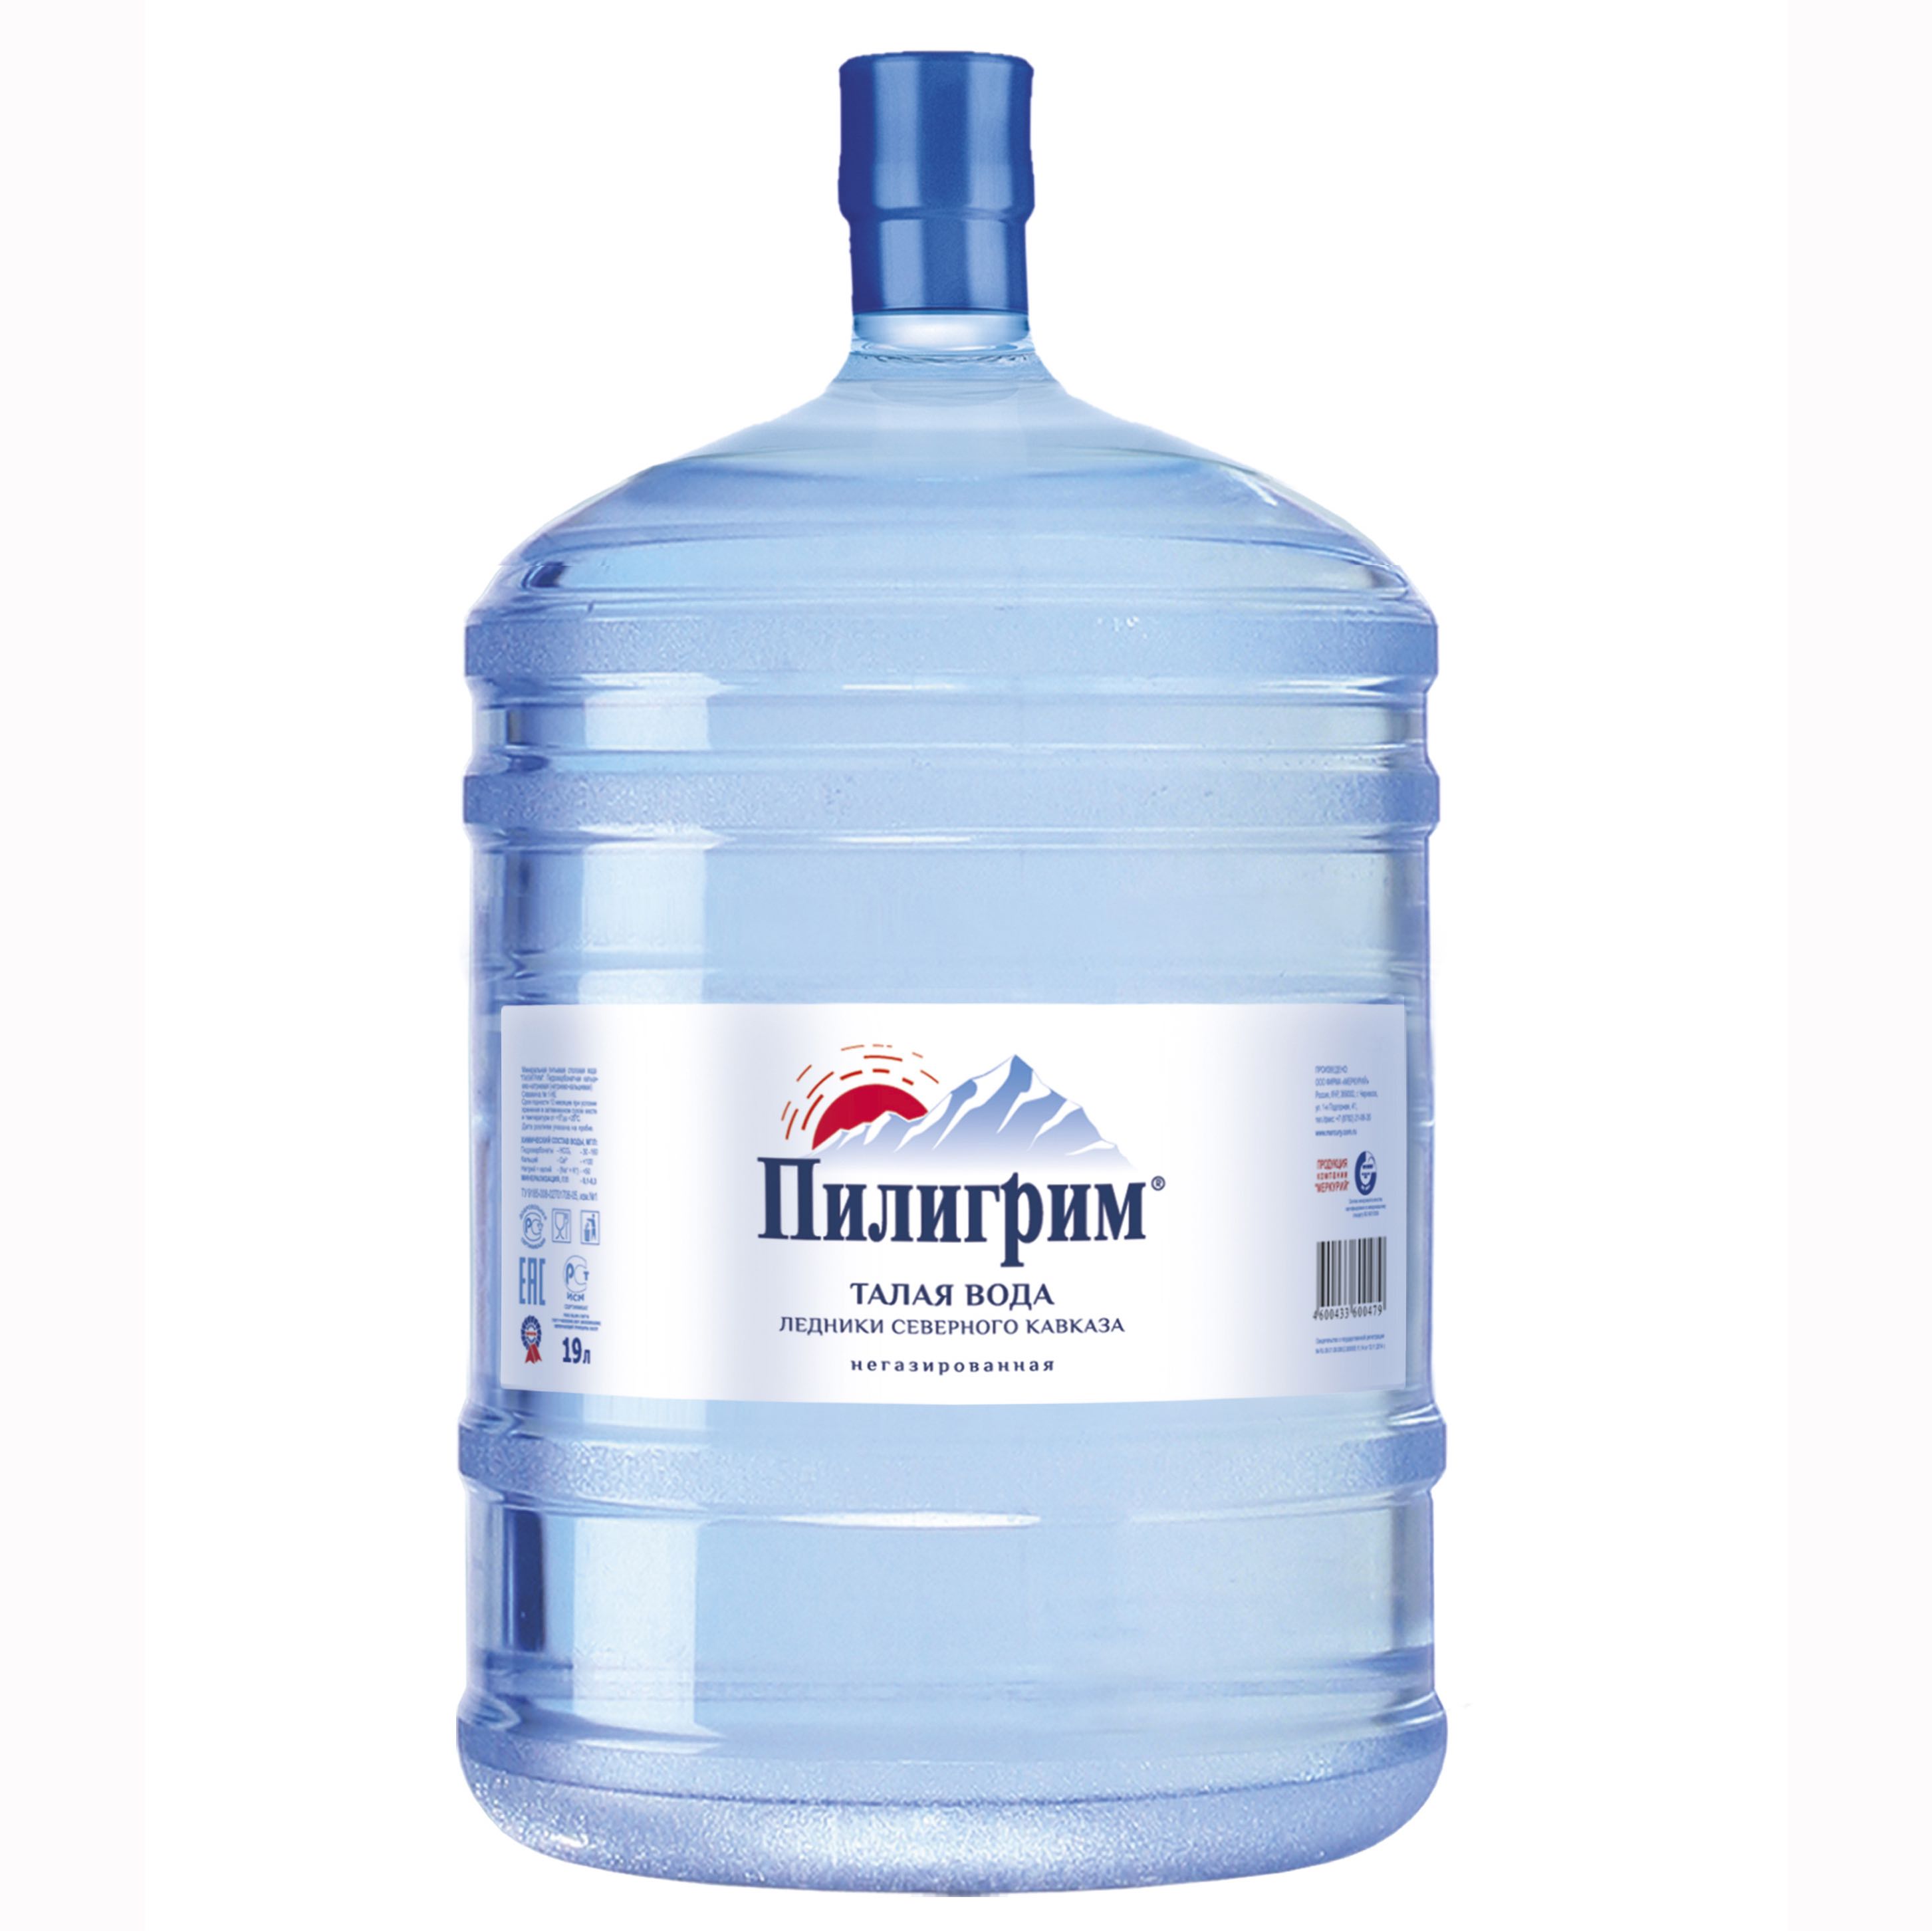 Доставка воды в пушкино, мытищи, мытищинский район вода в пушкино, живая вода доставка, доставка воды в офис 140 руб..